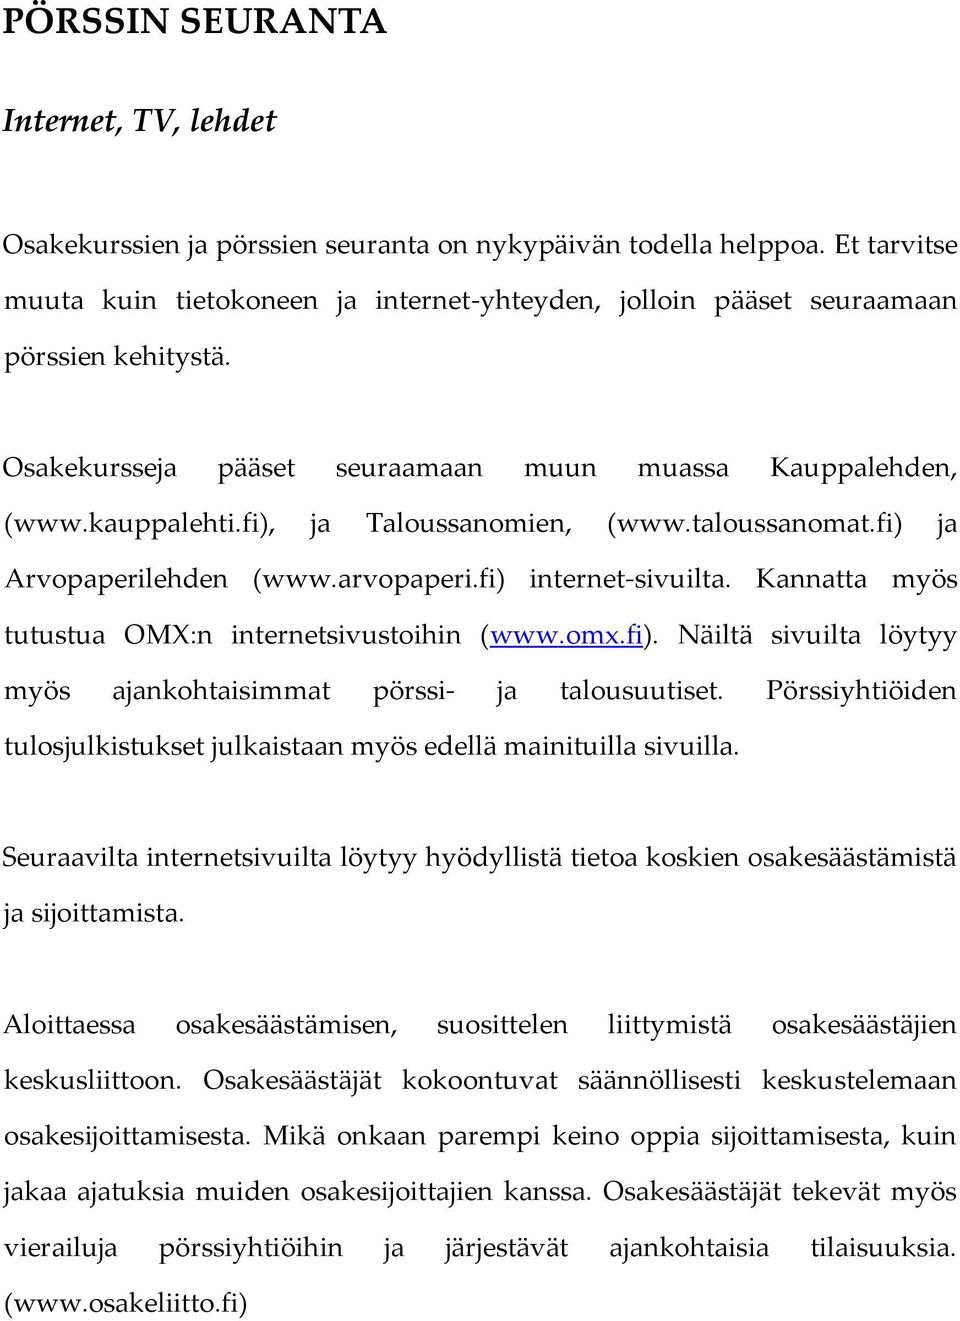 fi), ja Taloussanomien, (www.taloussanomat.fi) ja Arvopaperilehden (www.arvopaperi.fi) internet-sivuilta. Kannatta myös tutustua OMX:n internetsivustoihin (www.omx.fi). Näiltä sivuilta löytyy myös ajankohtaisimmat pörssi- ja talousuutiset.